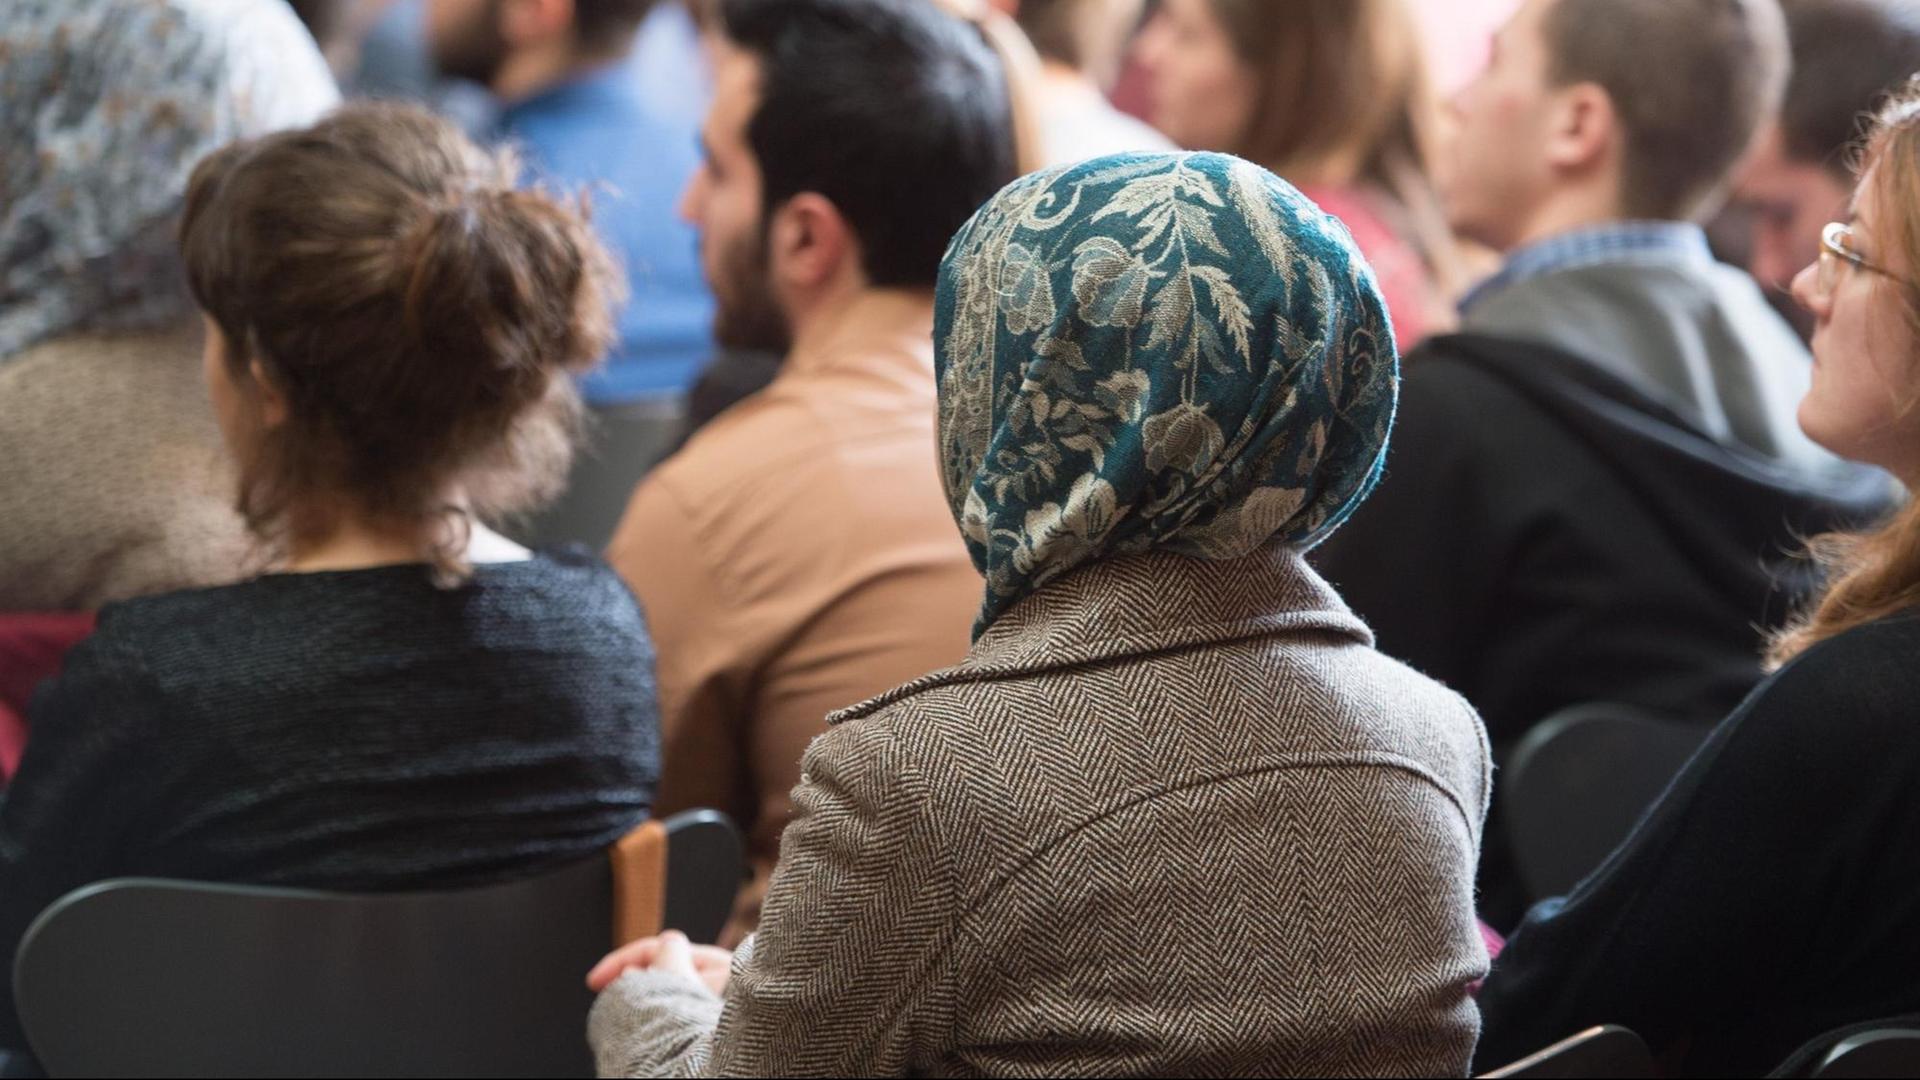 Das Bild zeigt eine Frau mit Kopftuch, die zwischen anderen Menschen im Publikum einer Veranstaltung sitzt.